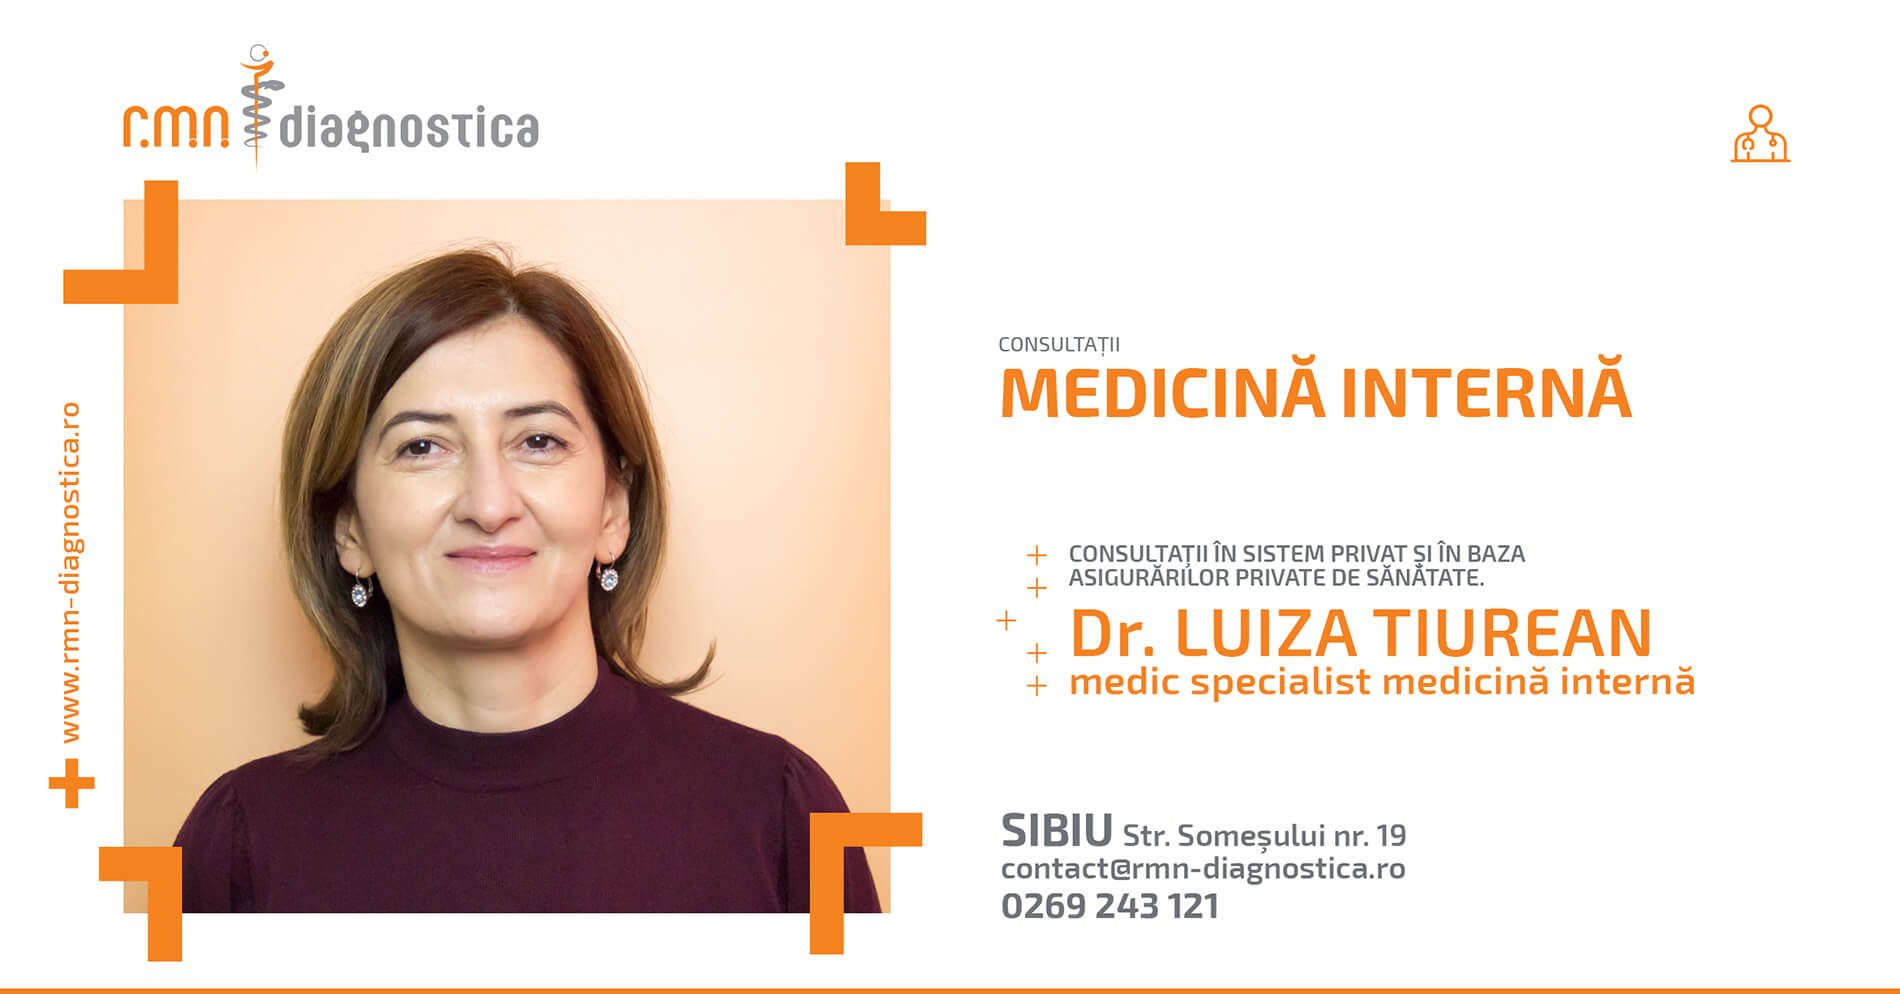 Consultații medicină internă Sibiu Dr Luiza Tiurean